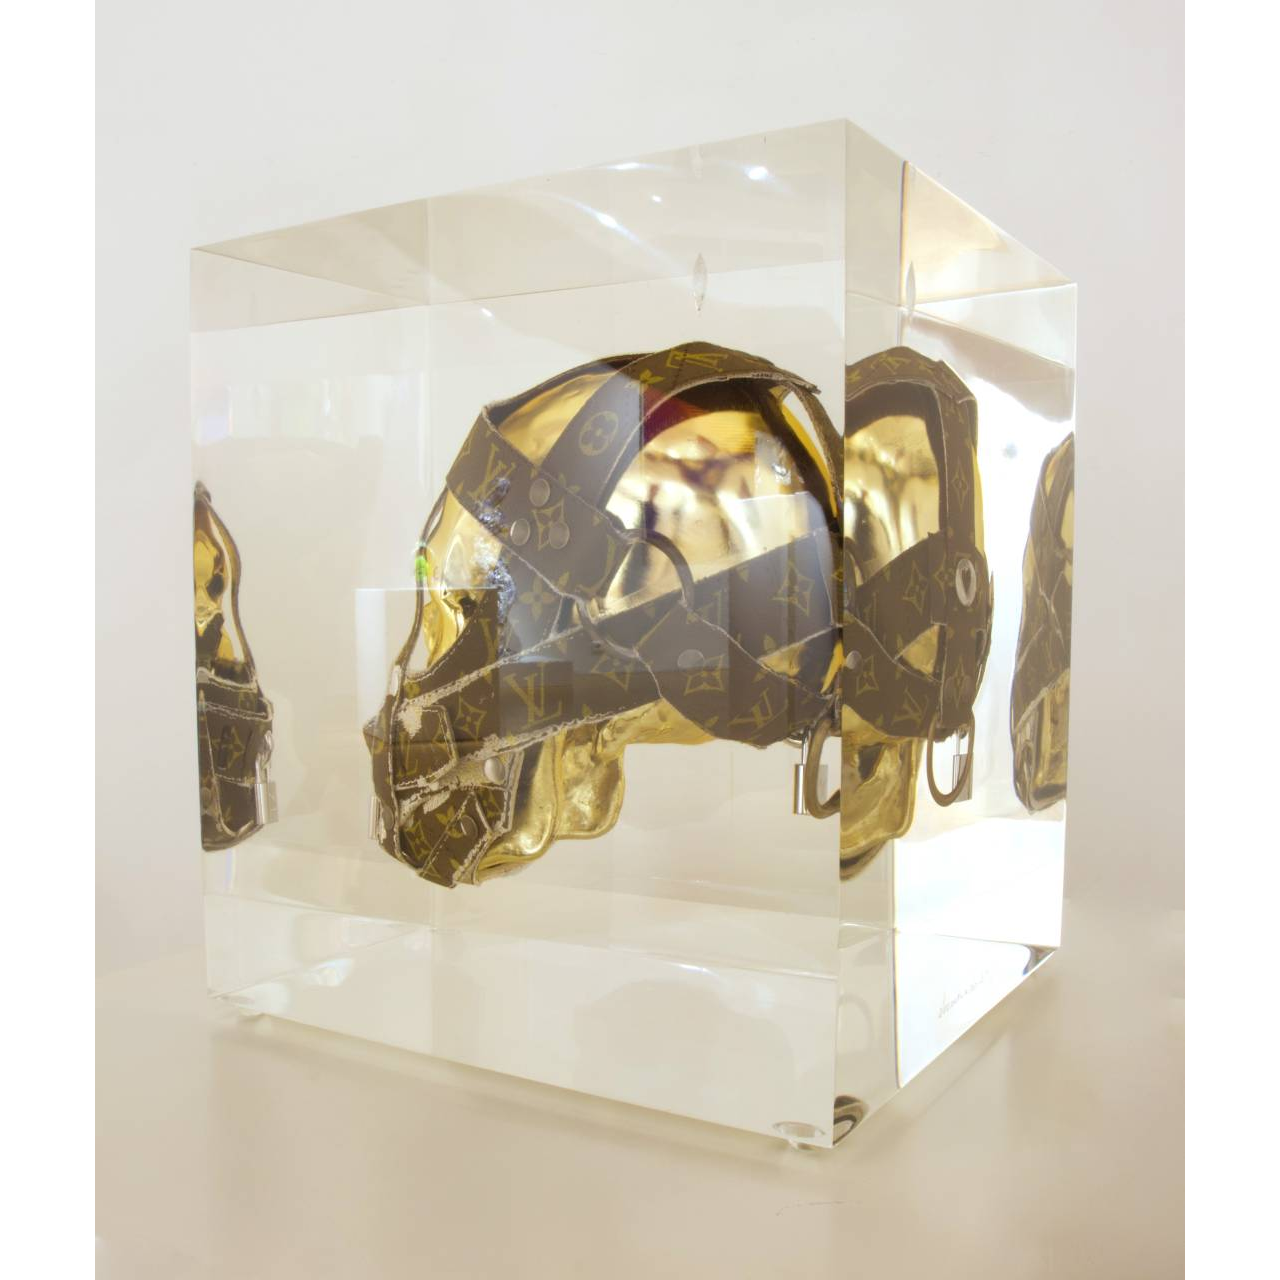 Alexandre NICOLAS, Slave to luxe, ( Crane Vuitton ), Inclusion de cristal syntèse et résine, 33 X 28 X 30 cm